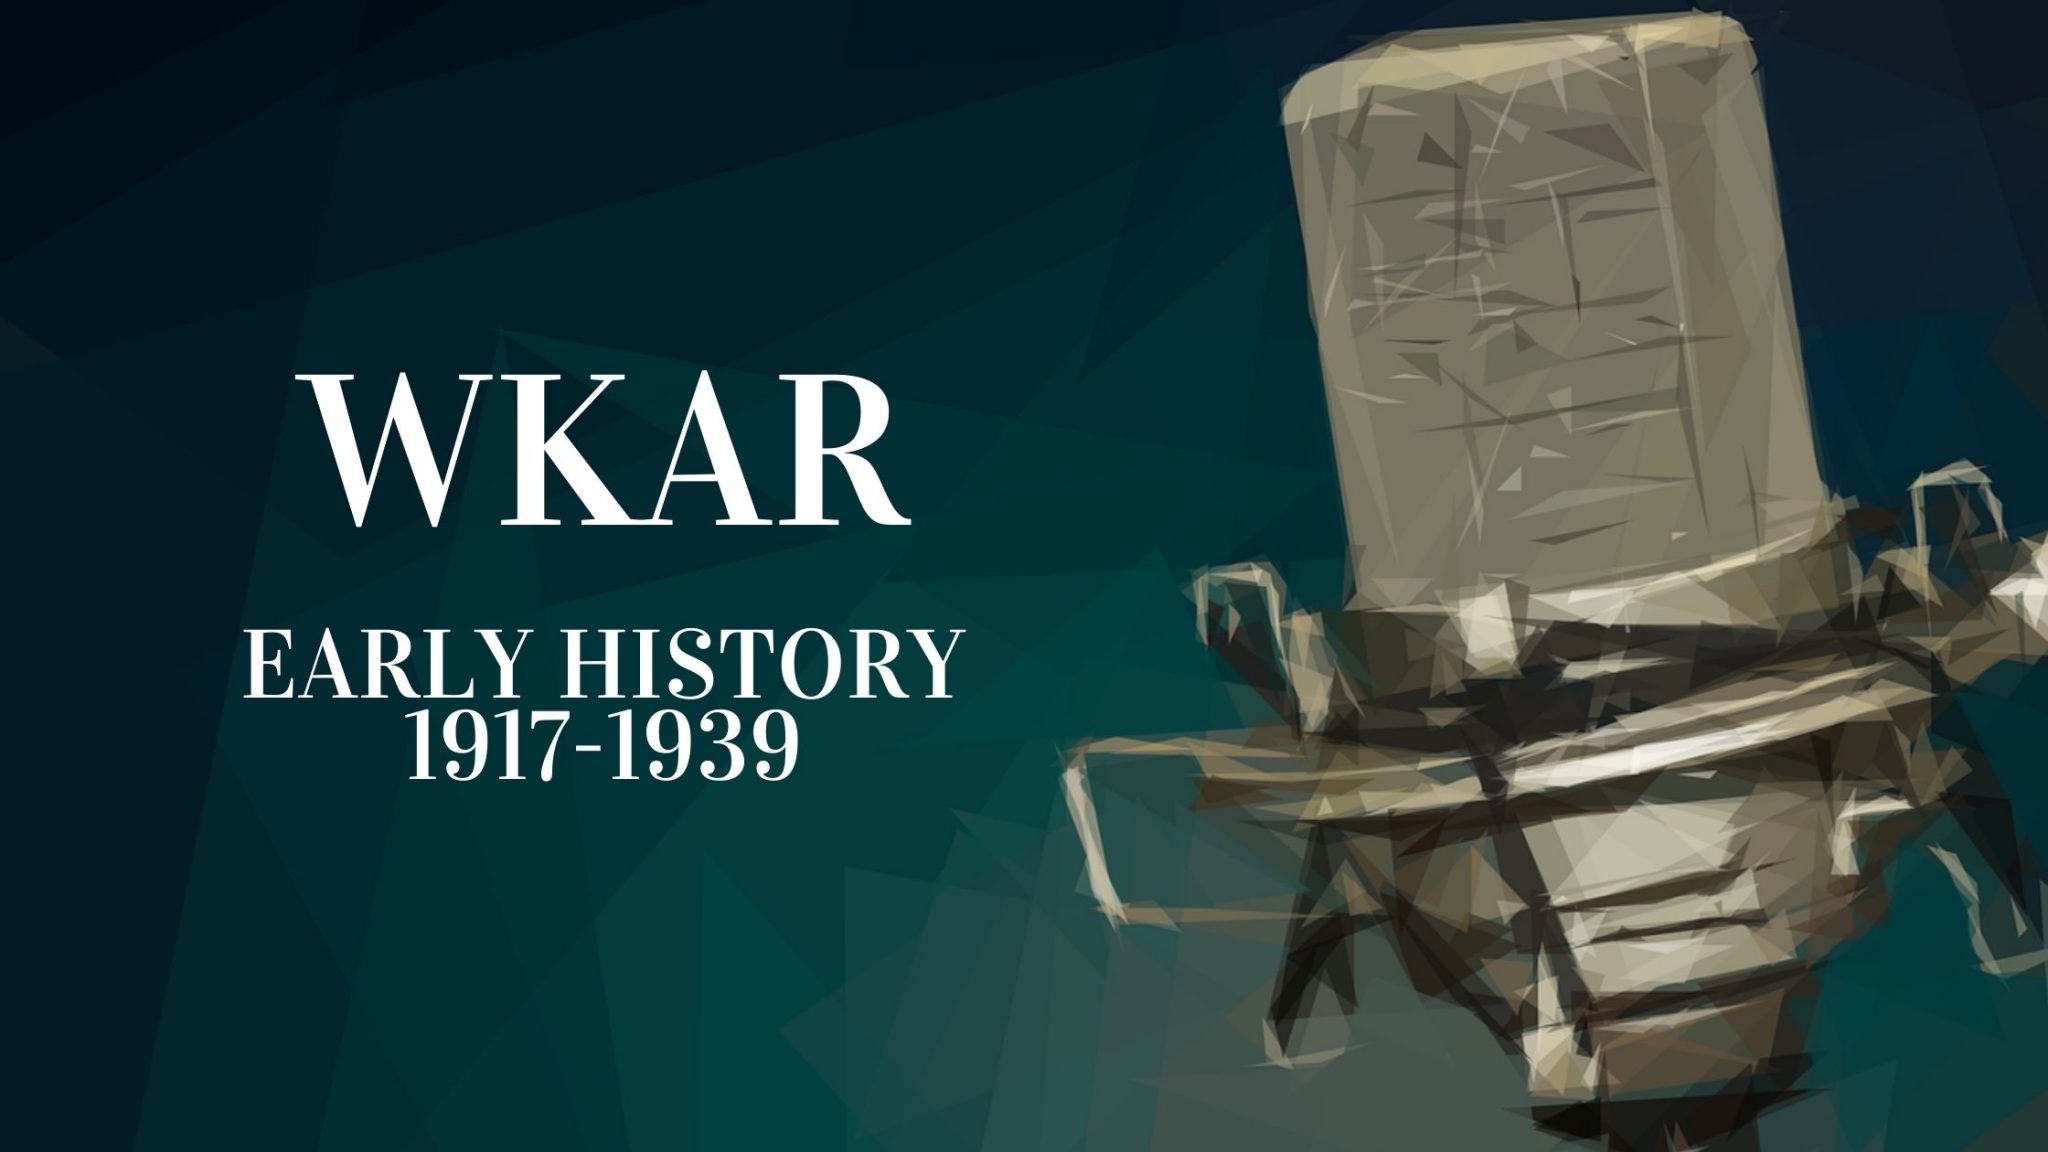 WKAR Early History 1917-1939